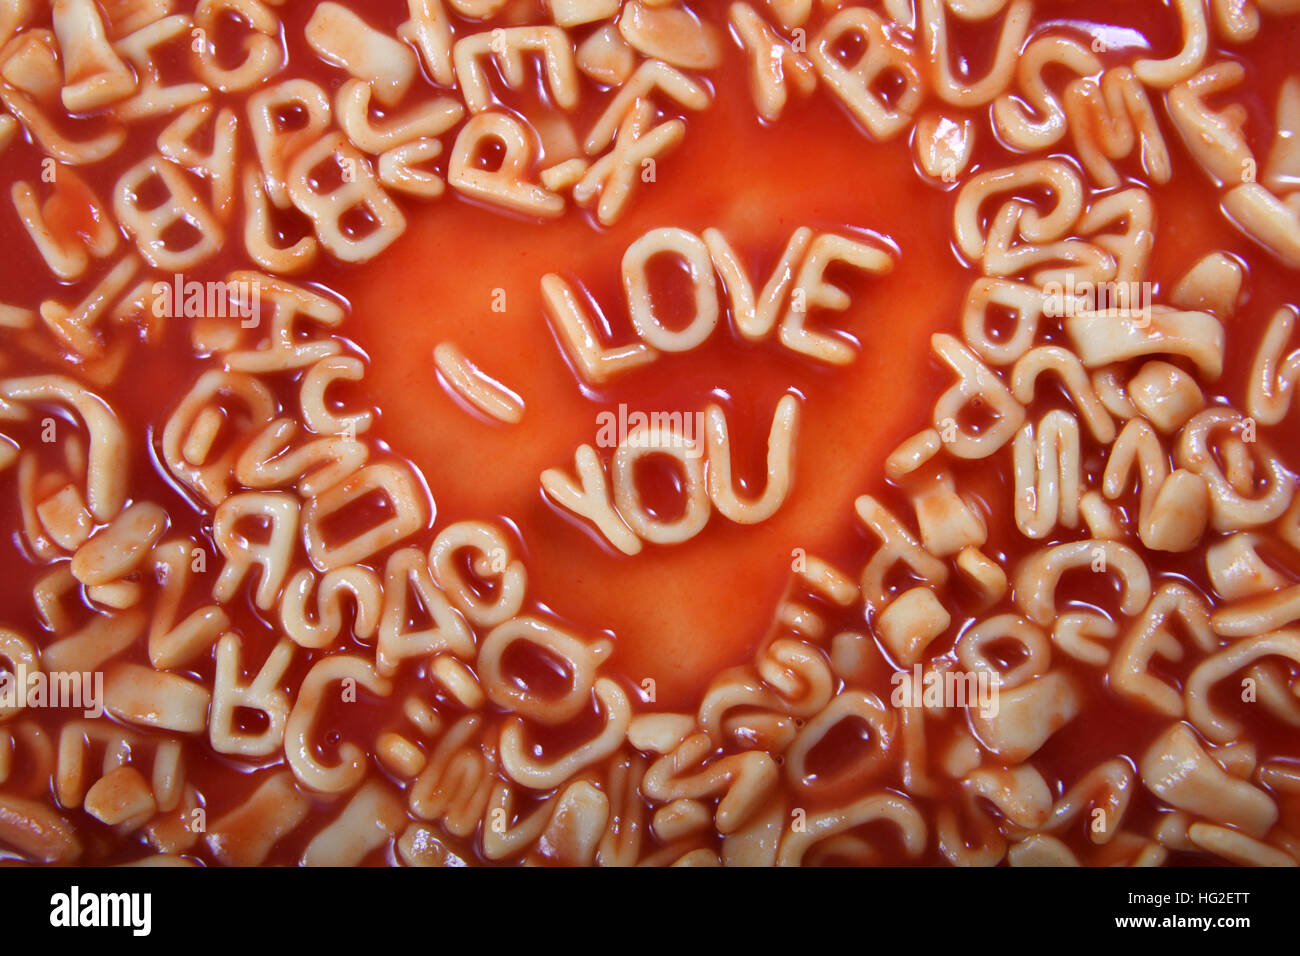 Je t'aime texte écrit en lettres en forme Alphabetti pâtes spaghetti, sauce à la tomate autour d'elle. Banque D'Images